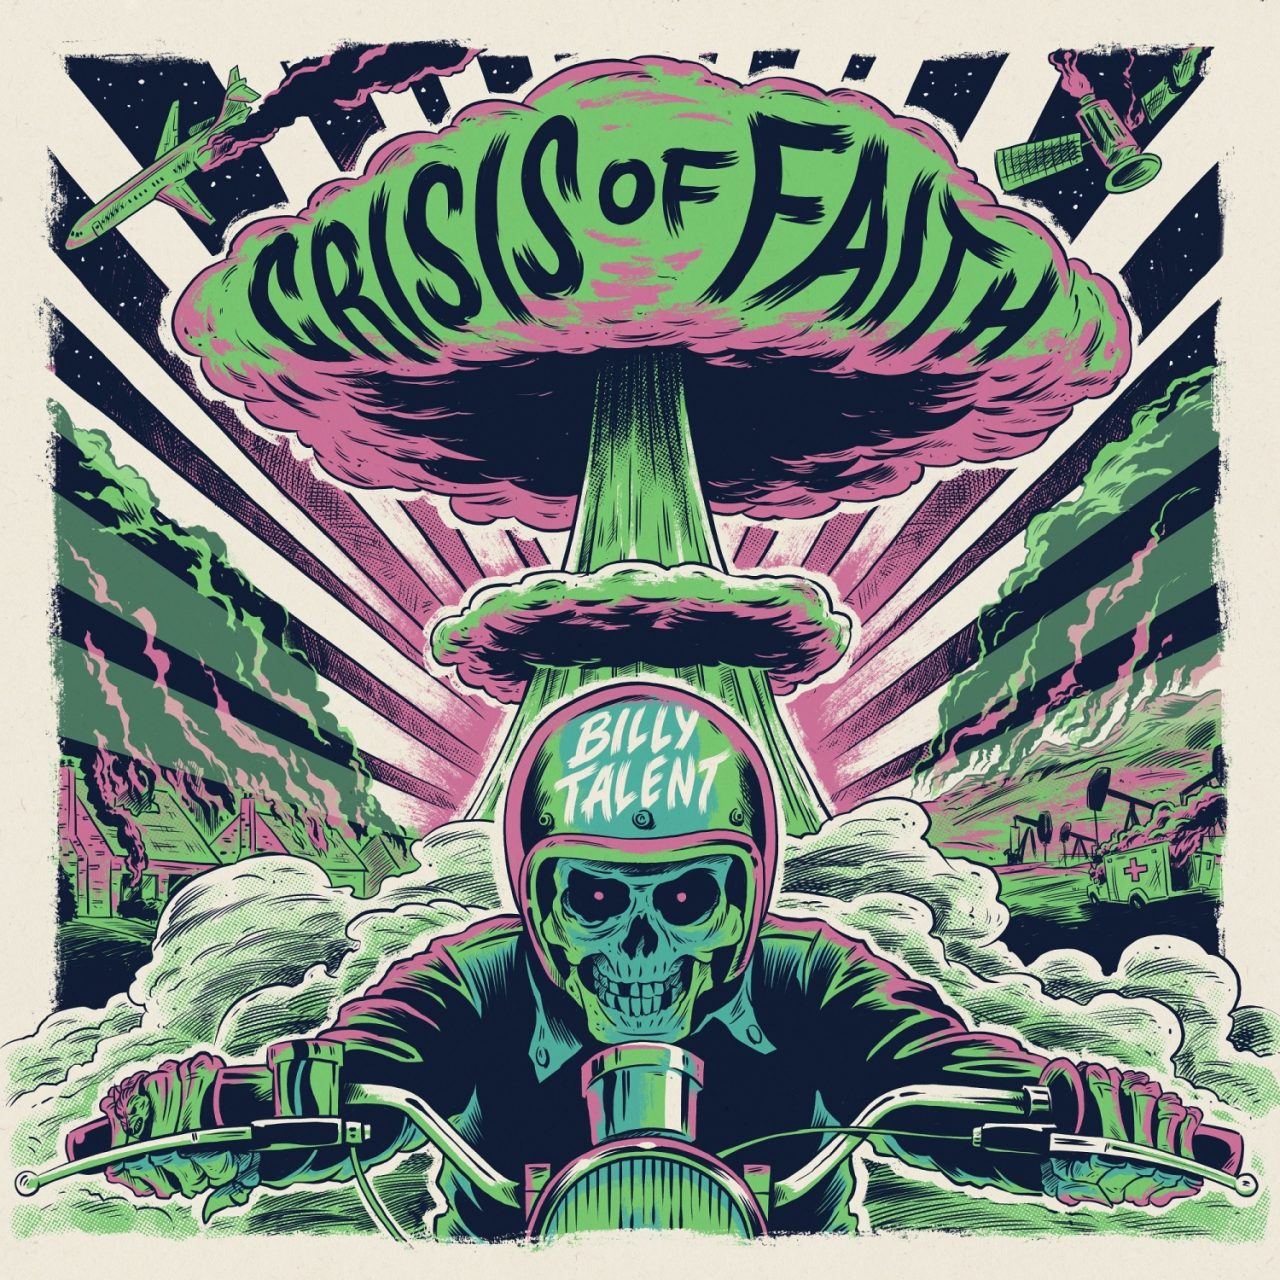 Das Albumcover "Crisis Of Faith" von Billy Talent ist gezeichnet. Es ist in den Farben grün, rosa, schwarz und weiß gehalten. Im Vordergrund ist ein Motorradfahrer mit einem Skelettkopf zu sehen. Dahinter ist eine große Explosionsrauchsäule zu sehen.